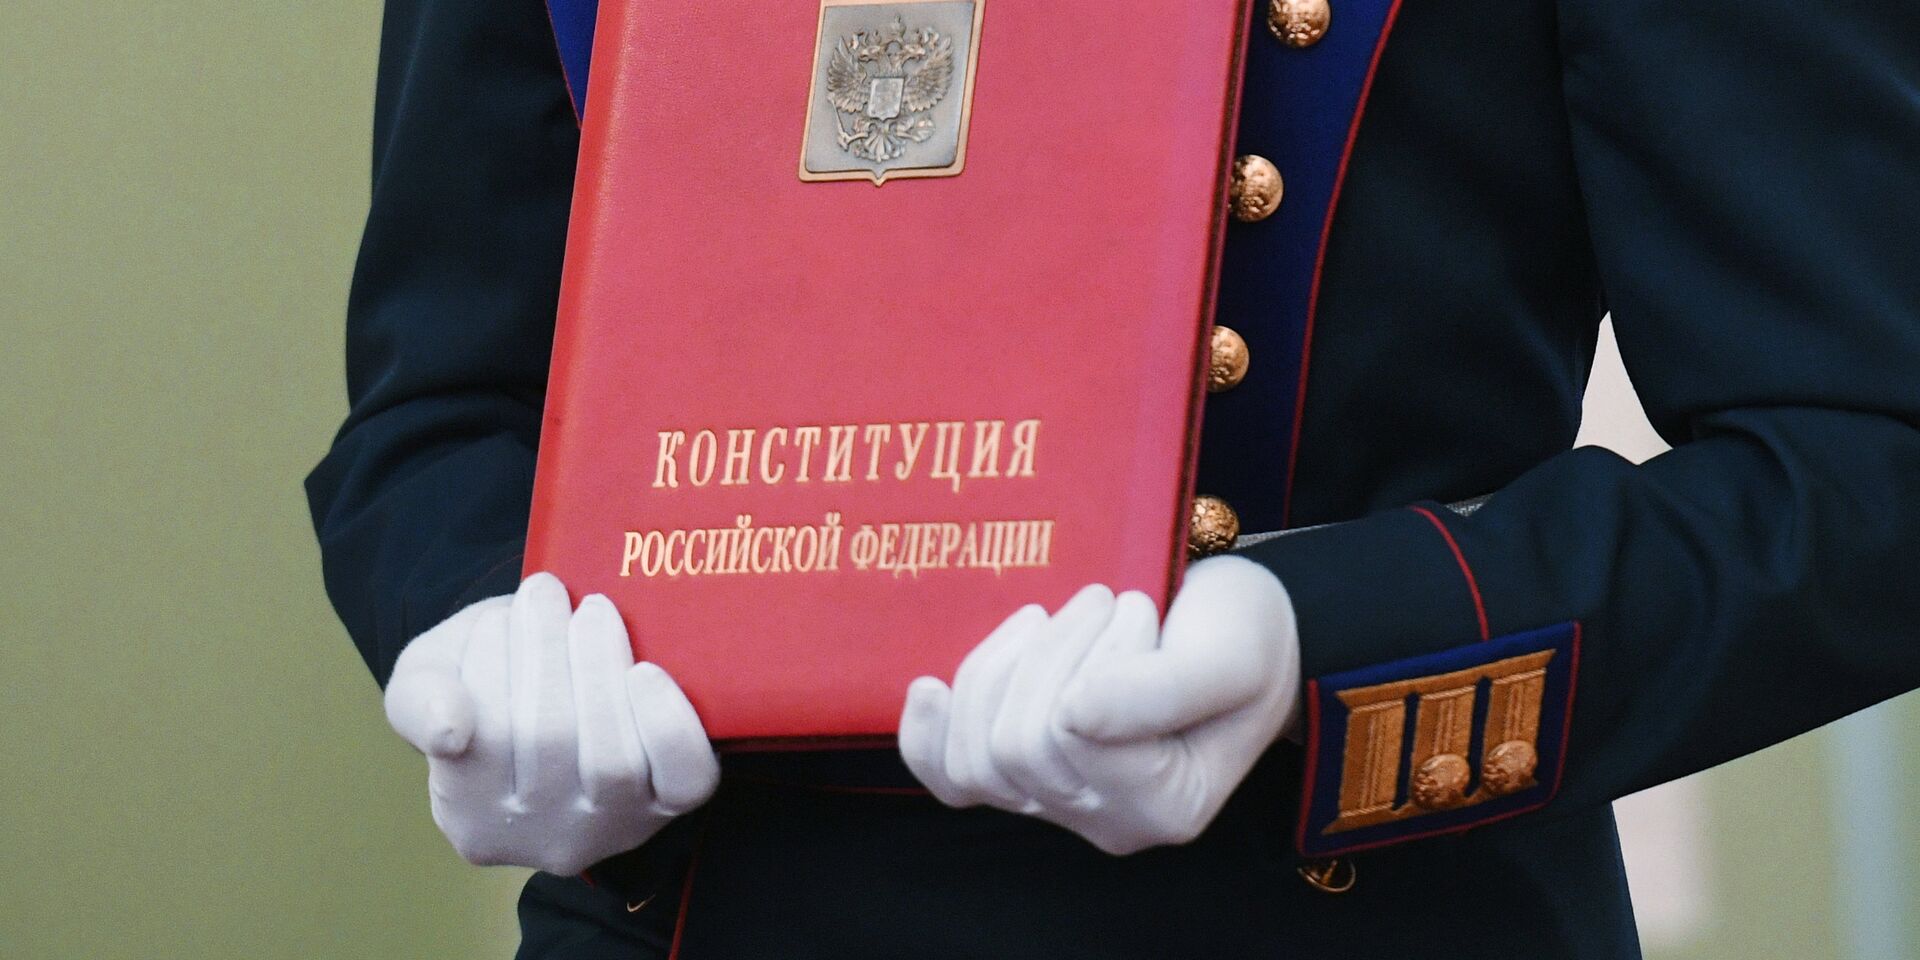 Конституция РФ фон